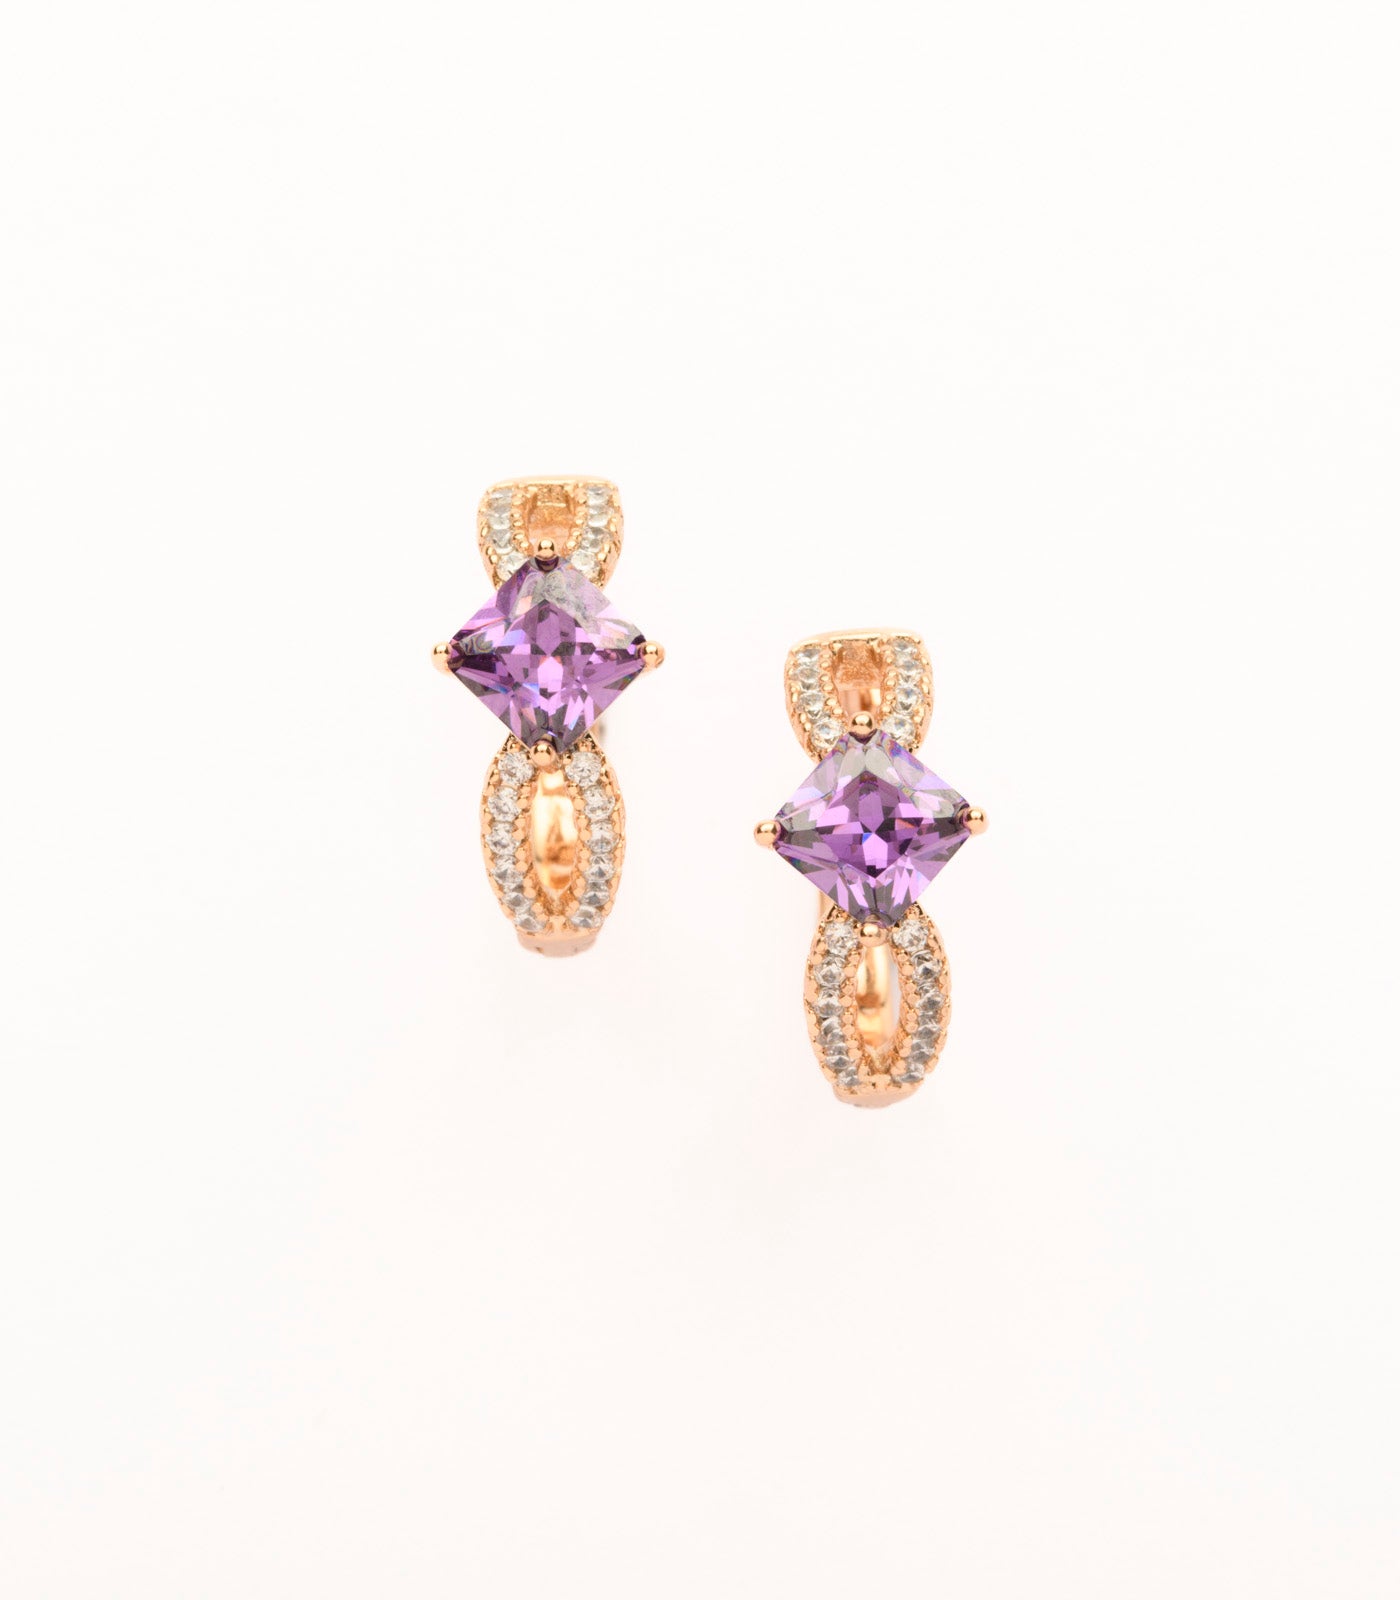 Glitzy Golden Flowers Of Purple Stones Earrings (Brass)